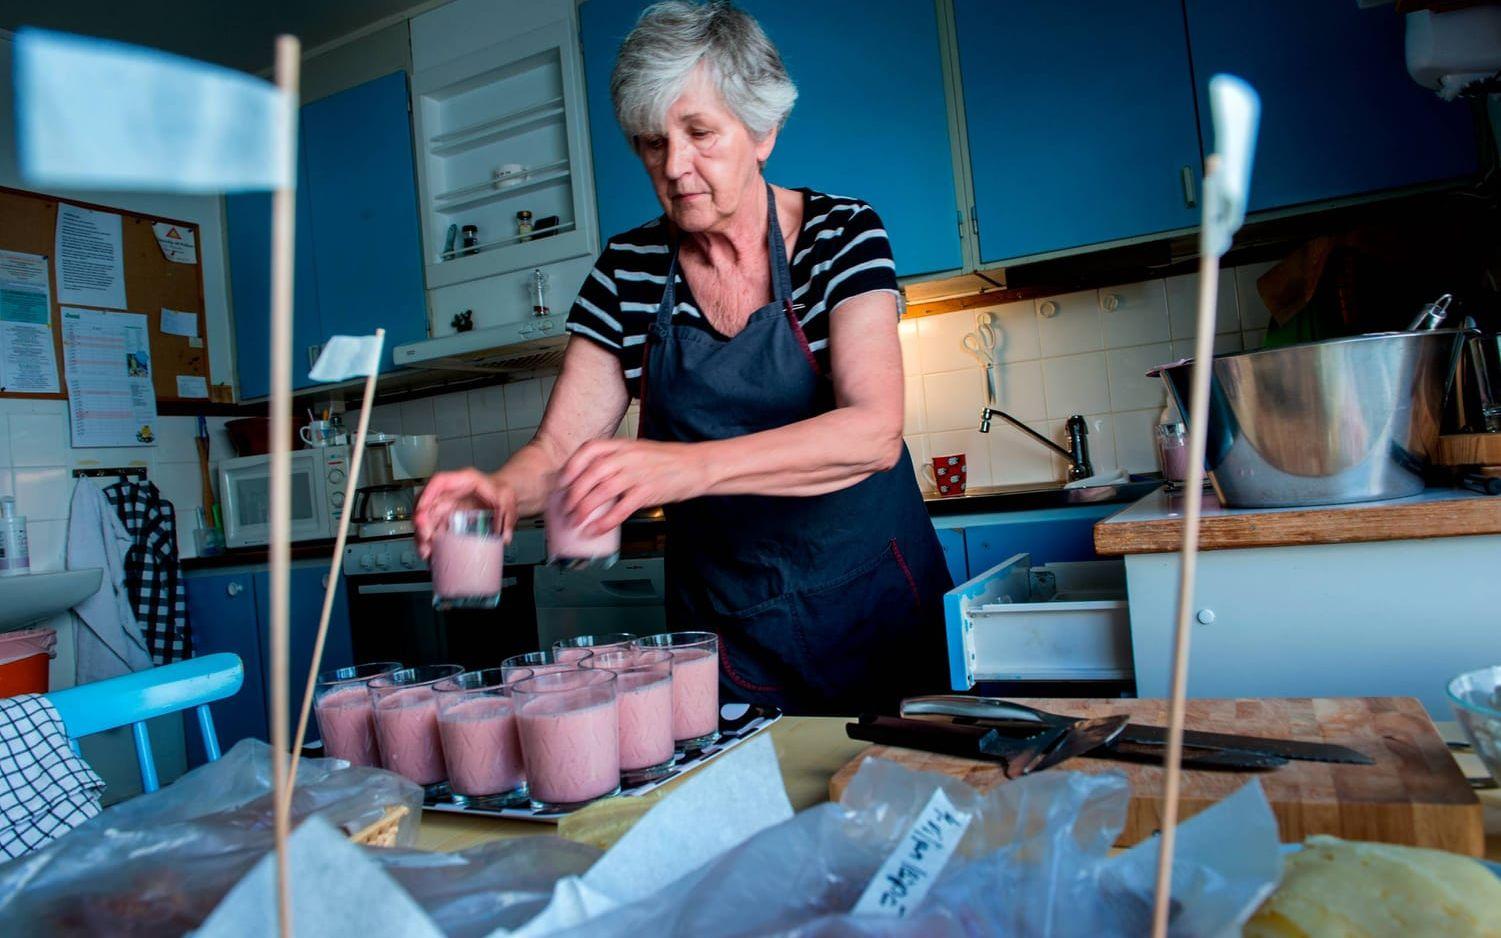 Aila Sillanpää ställer fram efterrätten med en bas av turkisk yoghurt. Bild: Anders Hofgren